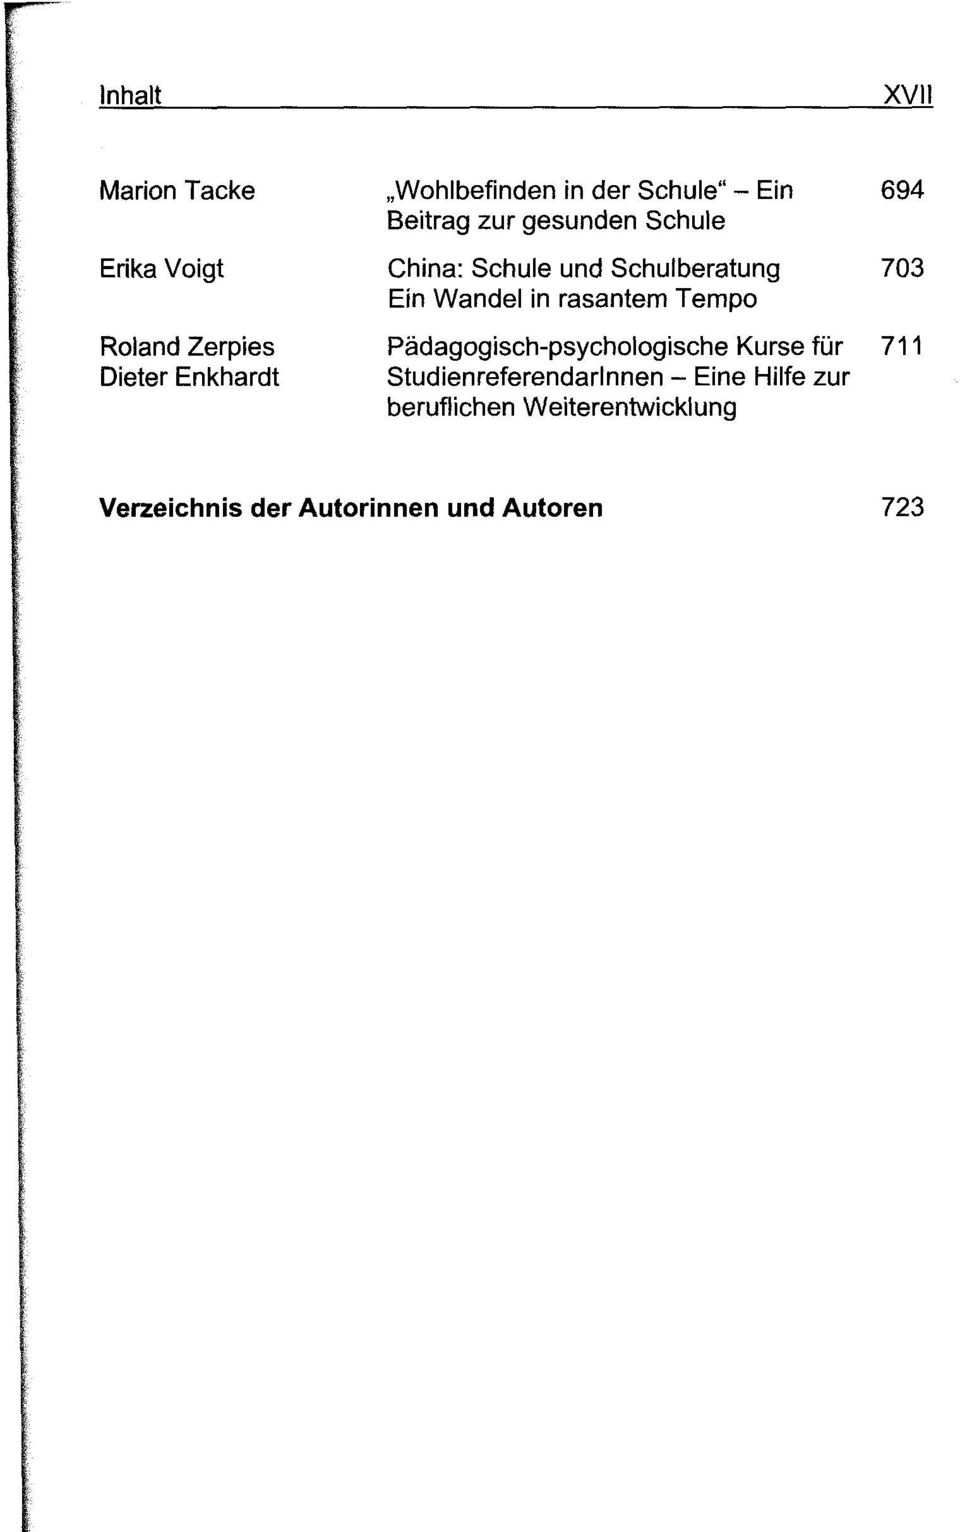 Roland Zerpies Pädagogisch-psychologische Kurse für 711 Dieter Enkhardt